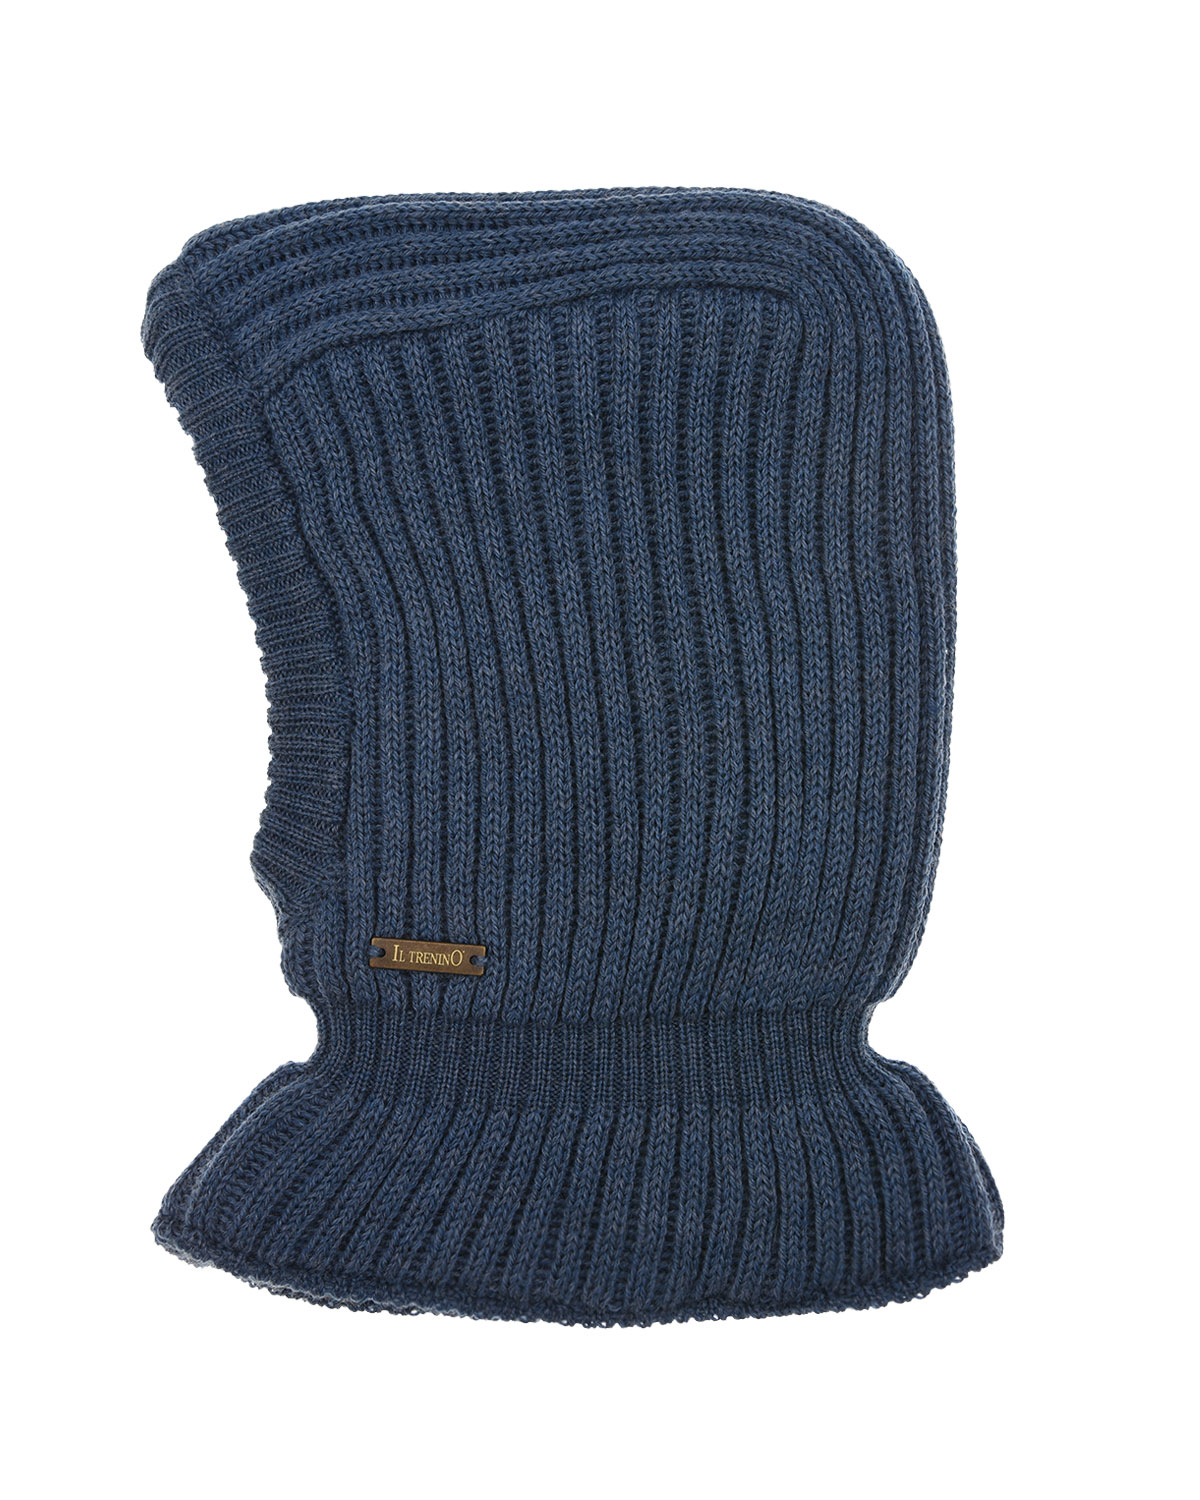 Синяя шапка-шлем из шерсти Il Trenino детская, размер 55, цвет синий - фото 3